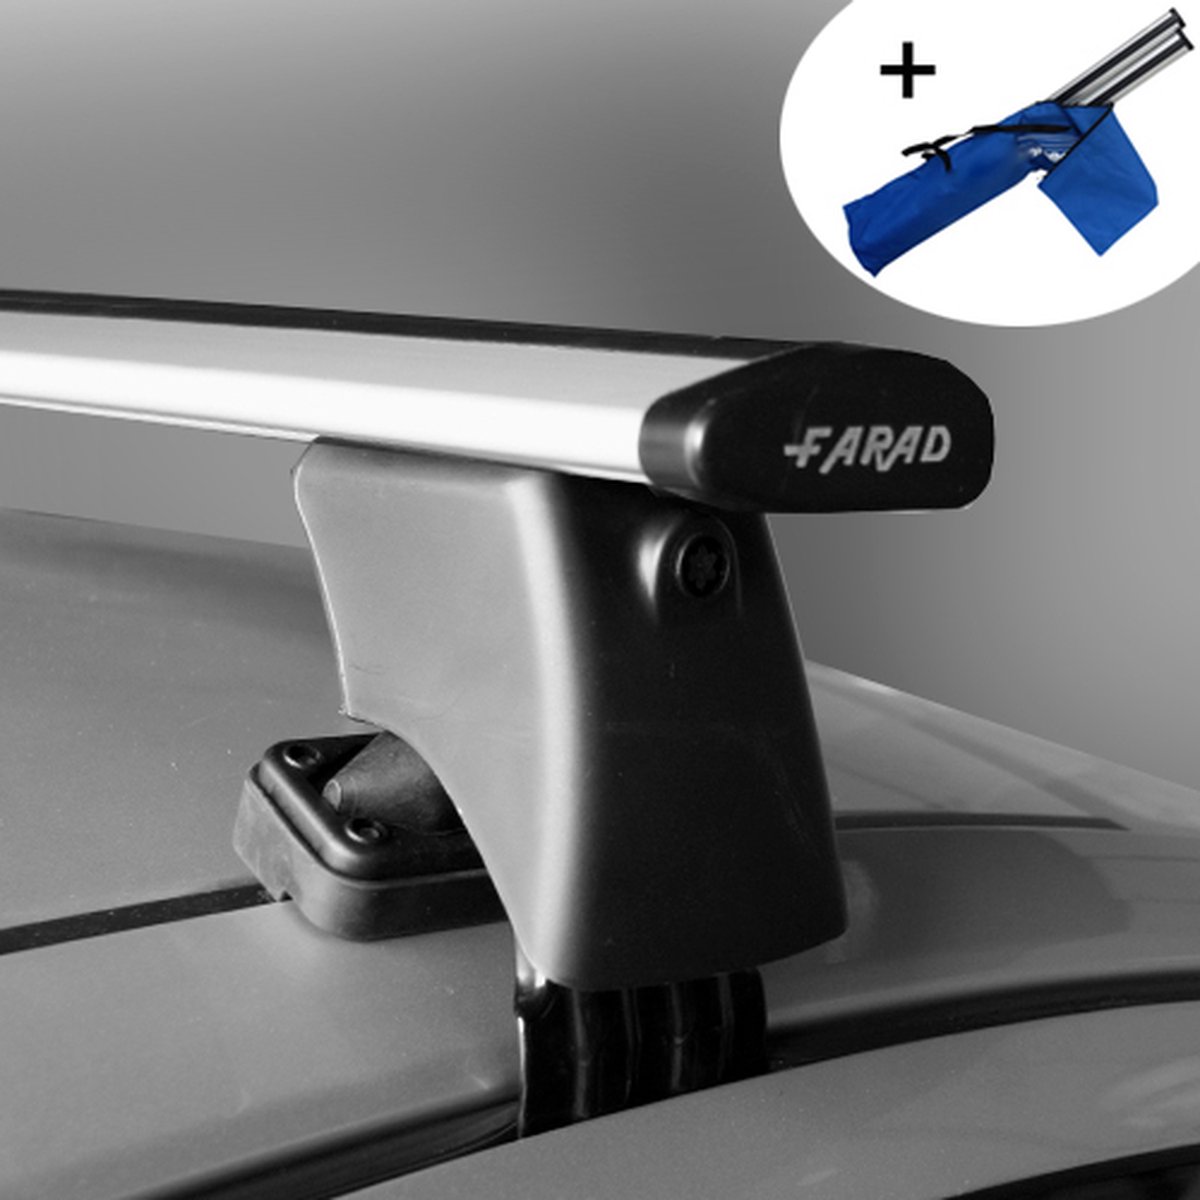 Dakdragers geschikt voor Seat Leon SC 3 deurs hatchback vanaf 2013 - Wingbar - inclusief dakdrager opbergtas